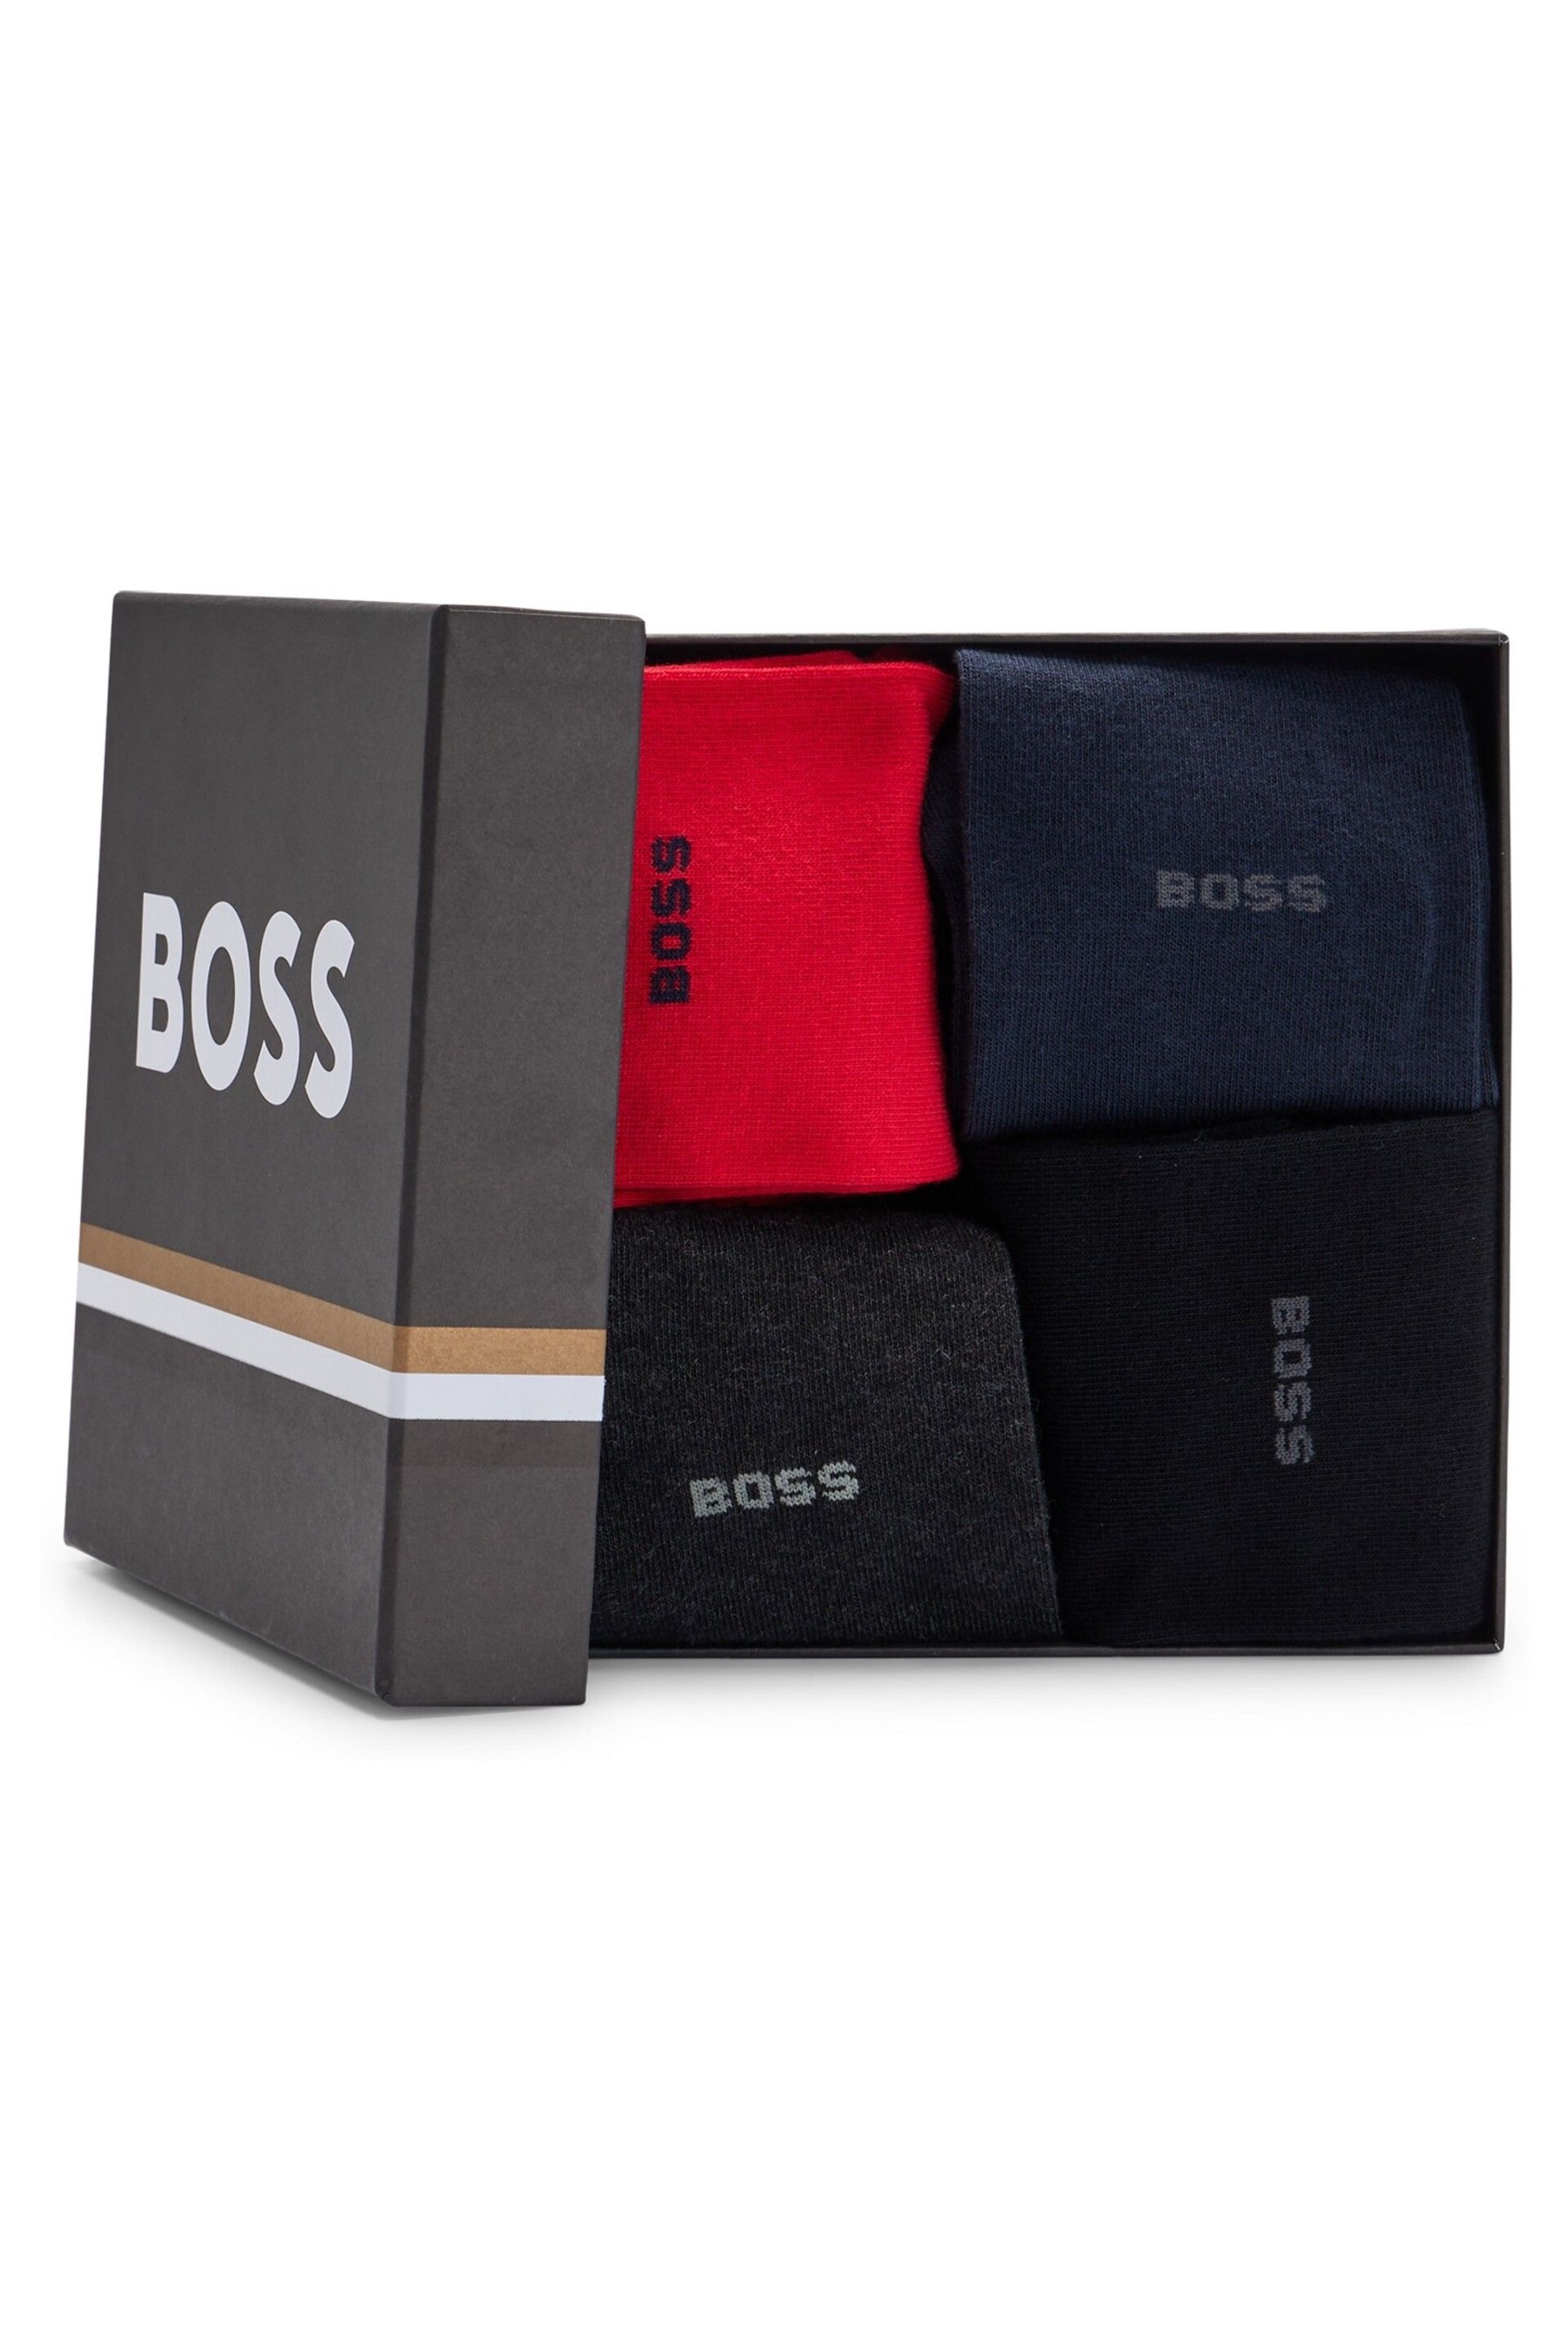 BOSS Red Uni Socks Gift Set 4 Pack - Image 3 of 3